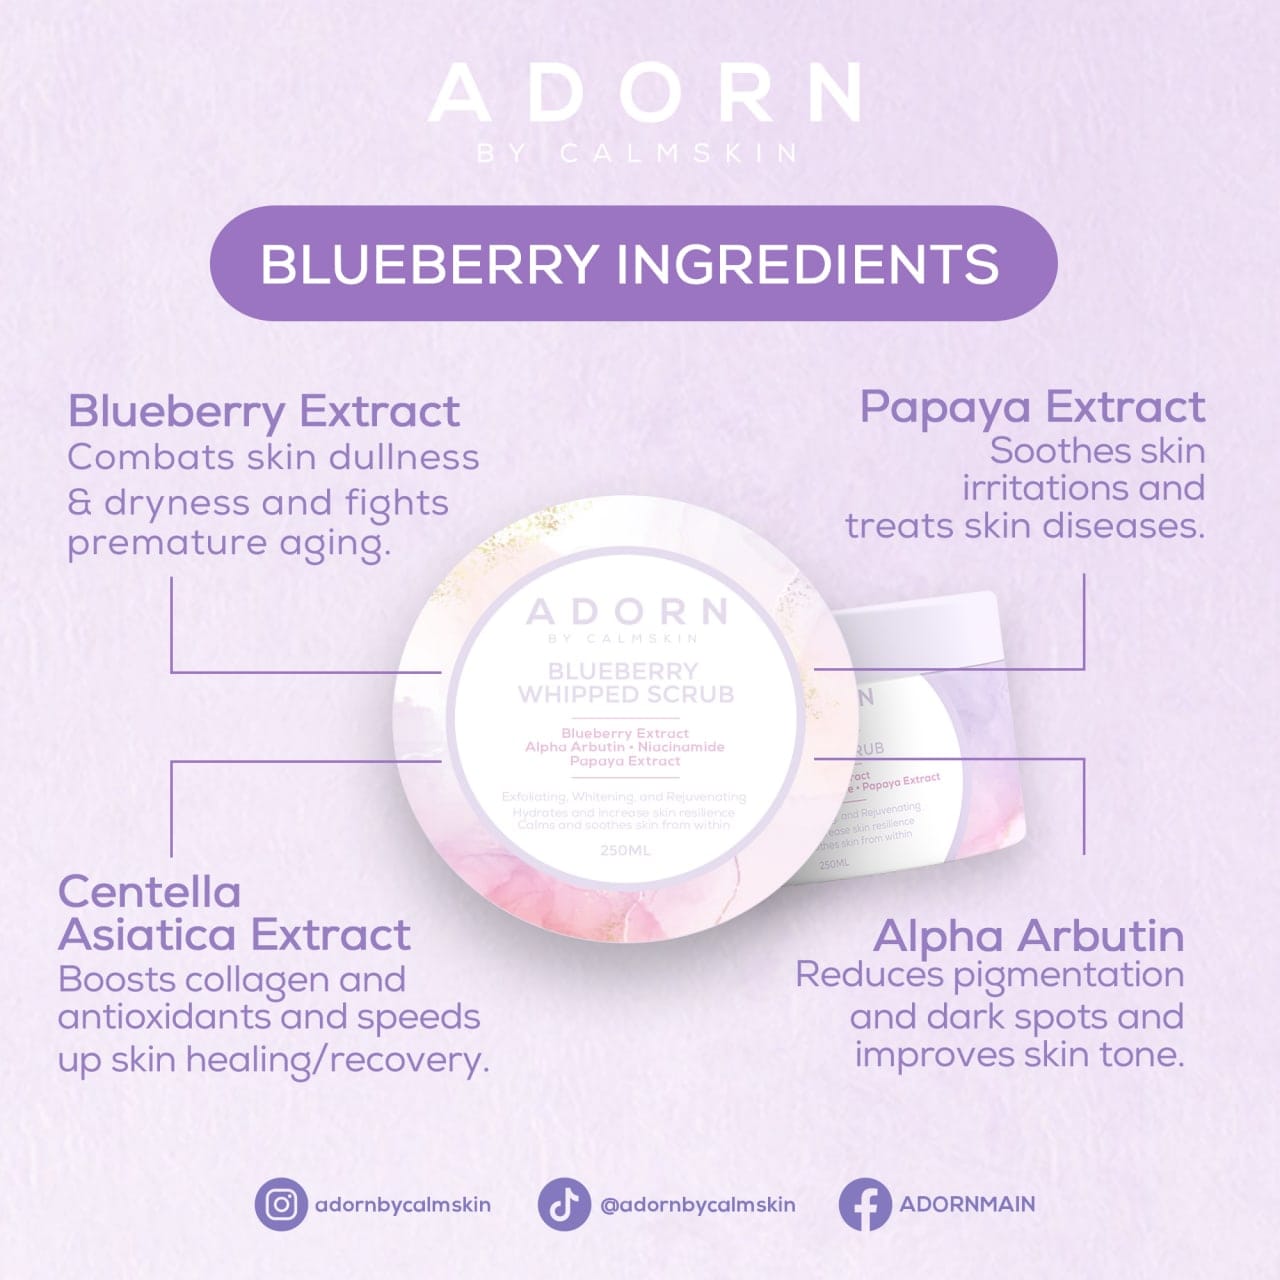 Adorn Blueberry Whipped Scrub